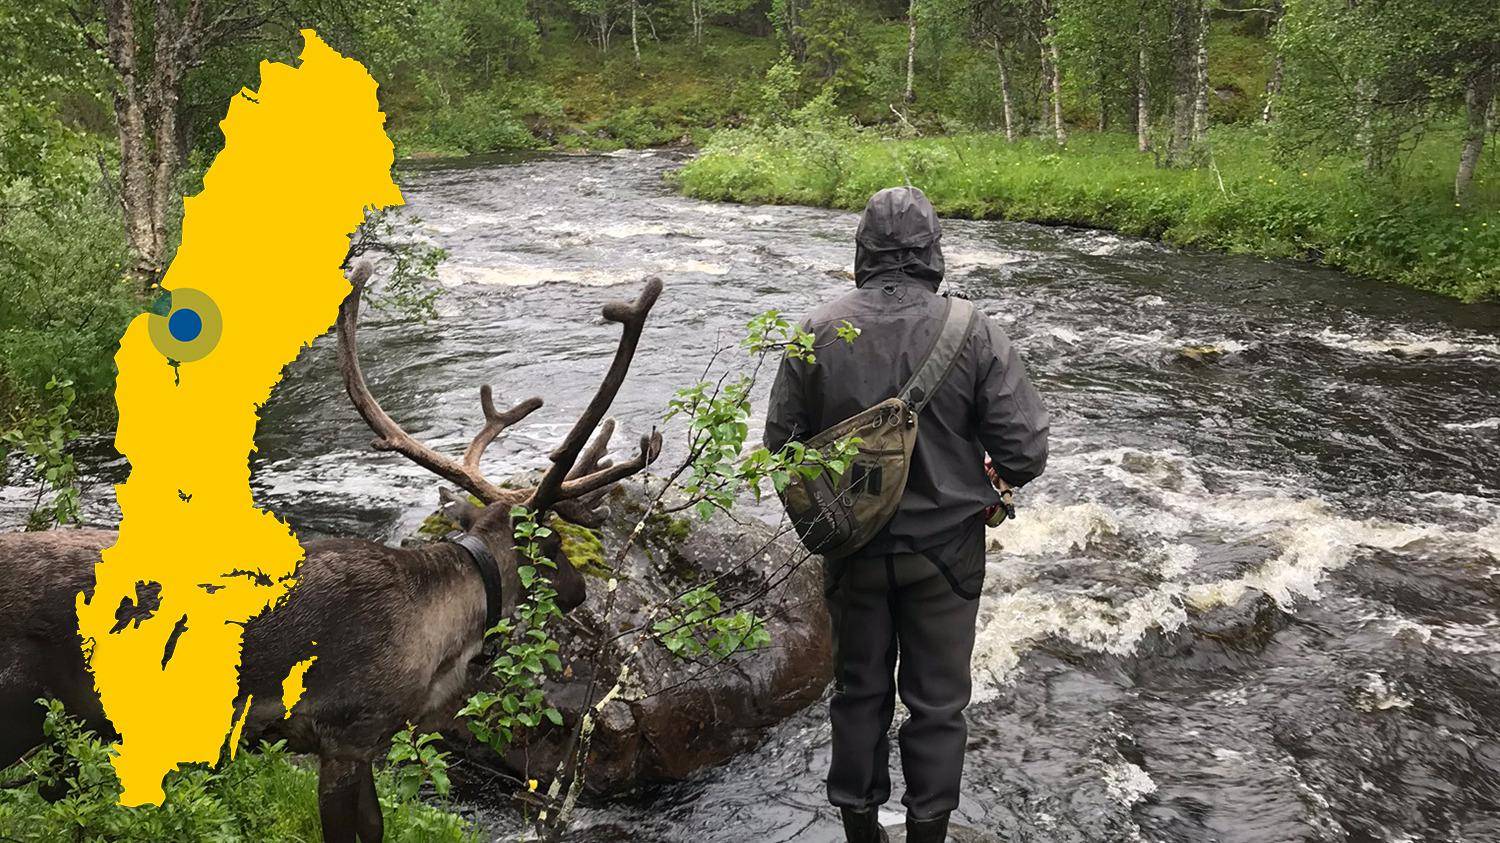 Ein Rentier und eine Person mit Blick auf einen Fluss. Eine gelbe Karte von Schweden mit einer Markierung, die Laxviken lokalisiert, ist im Bild platziert.